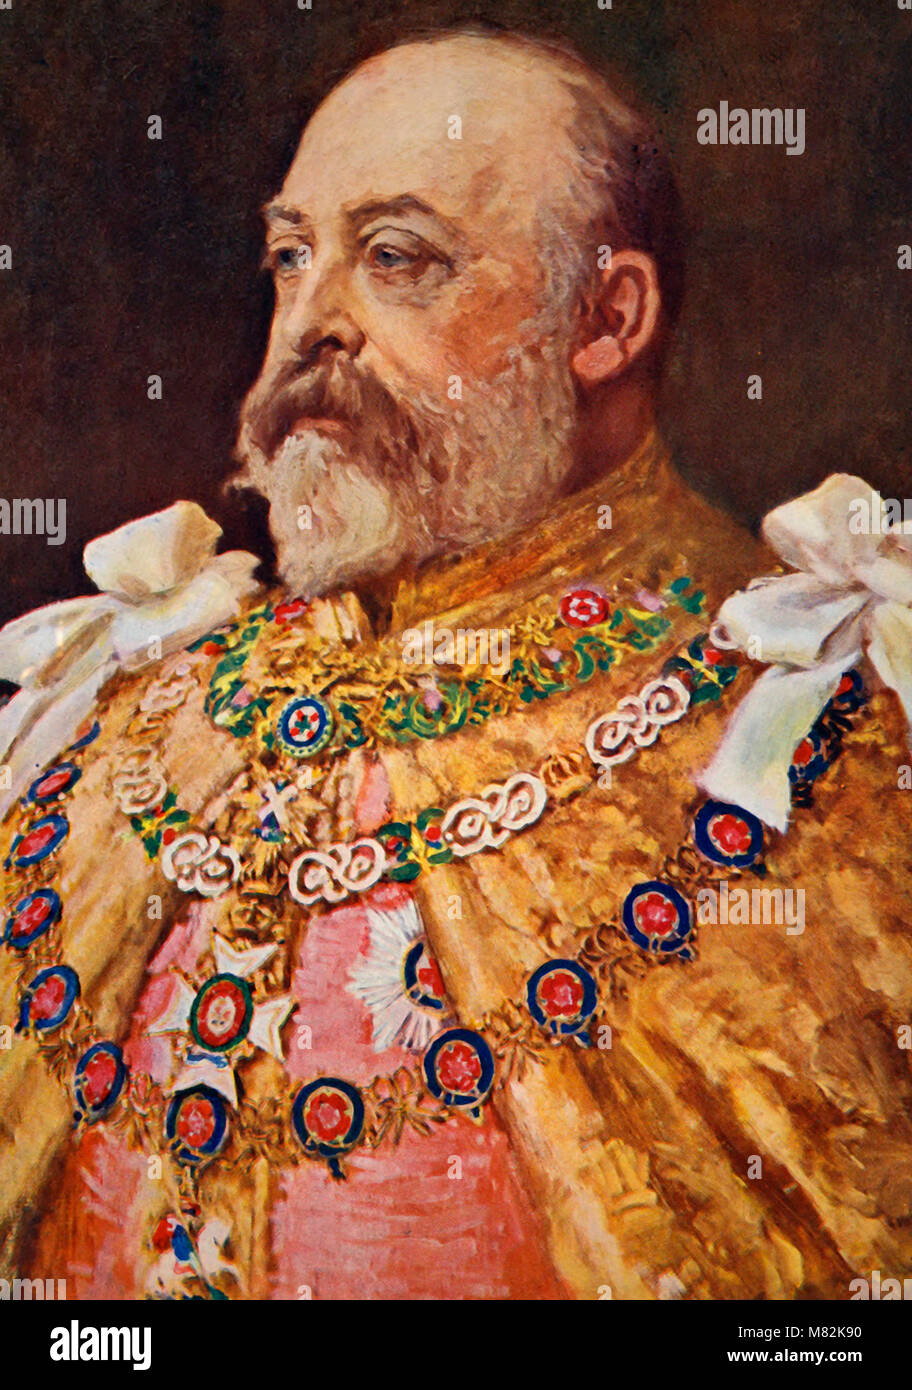 Su Majestad el Rey Edward VII Foto de stock